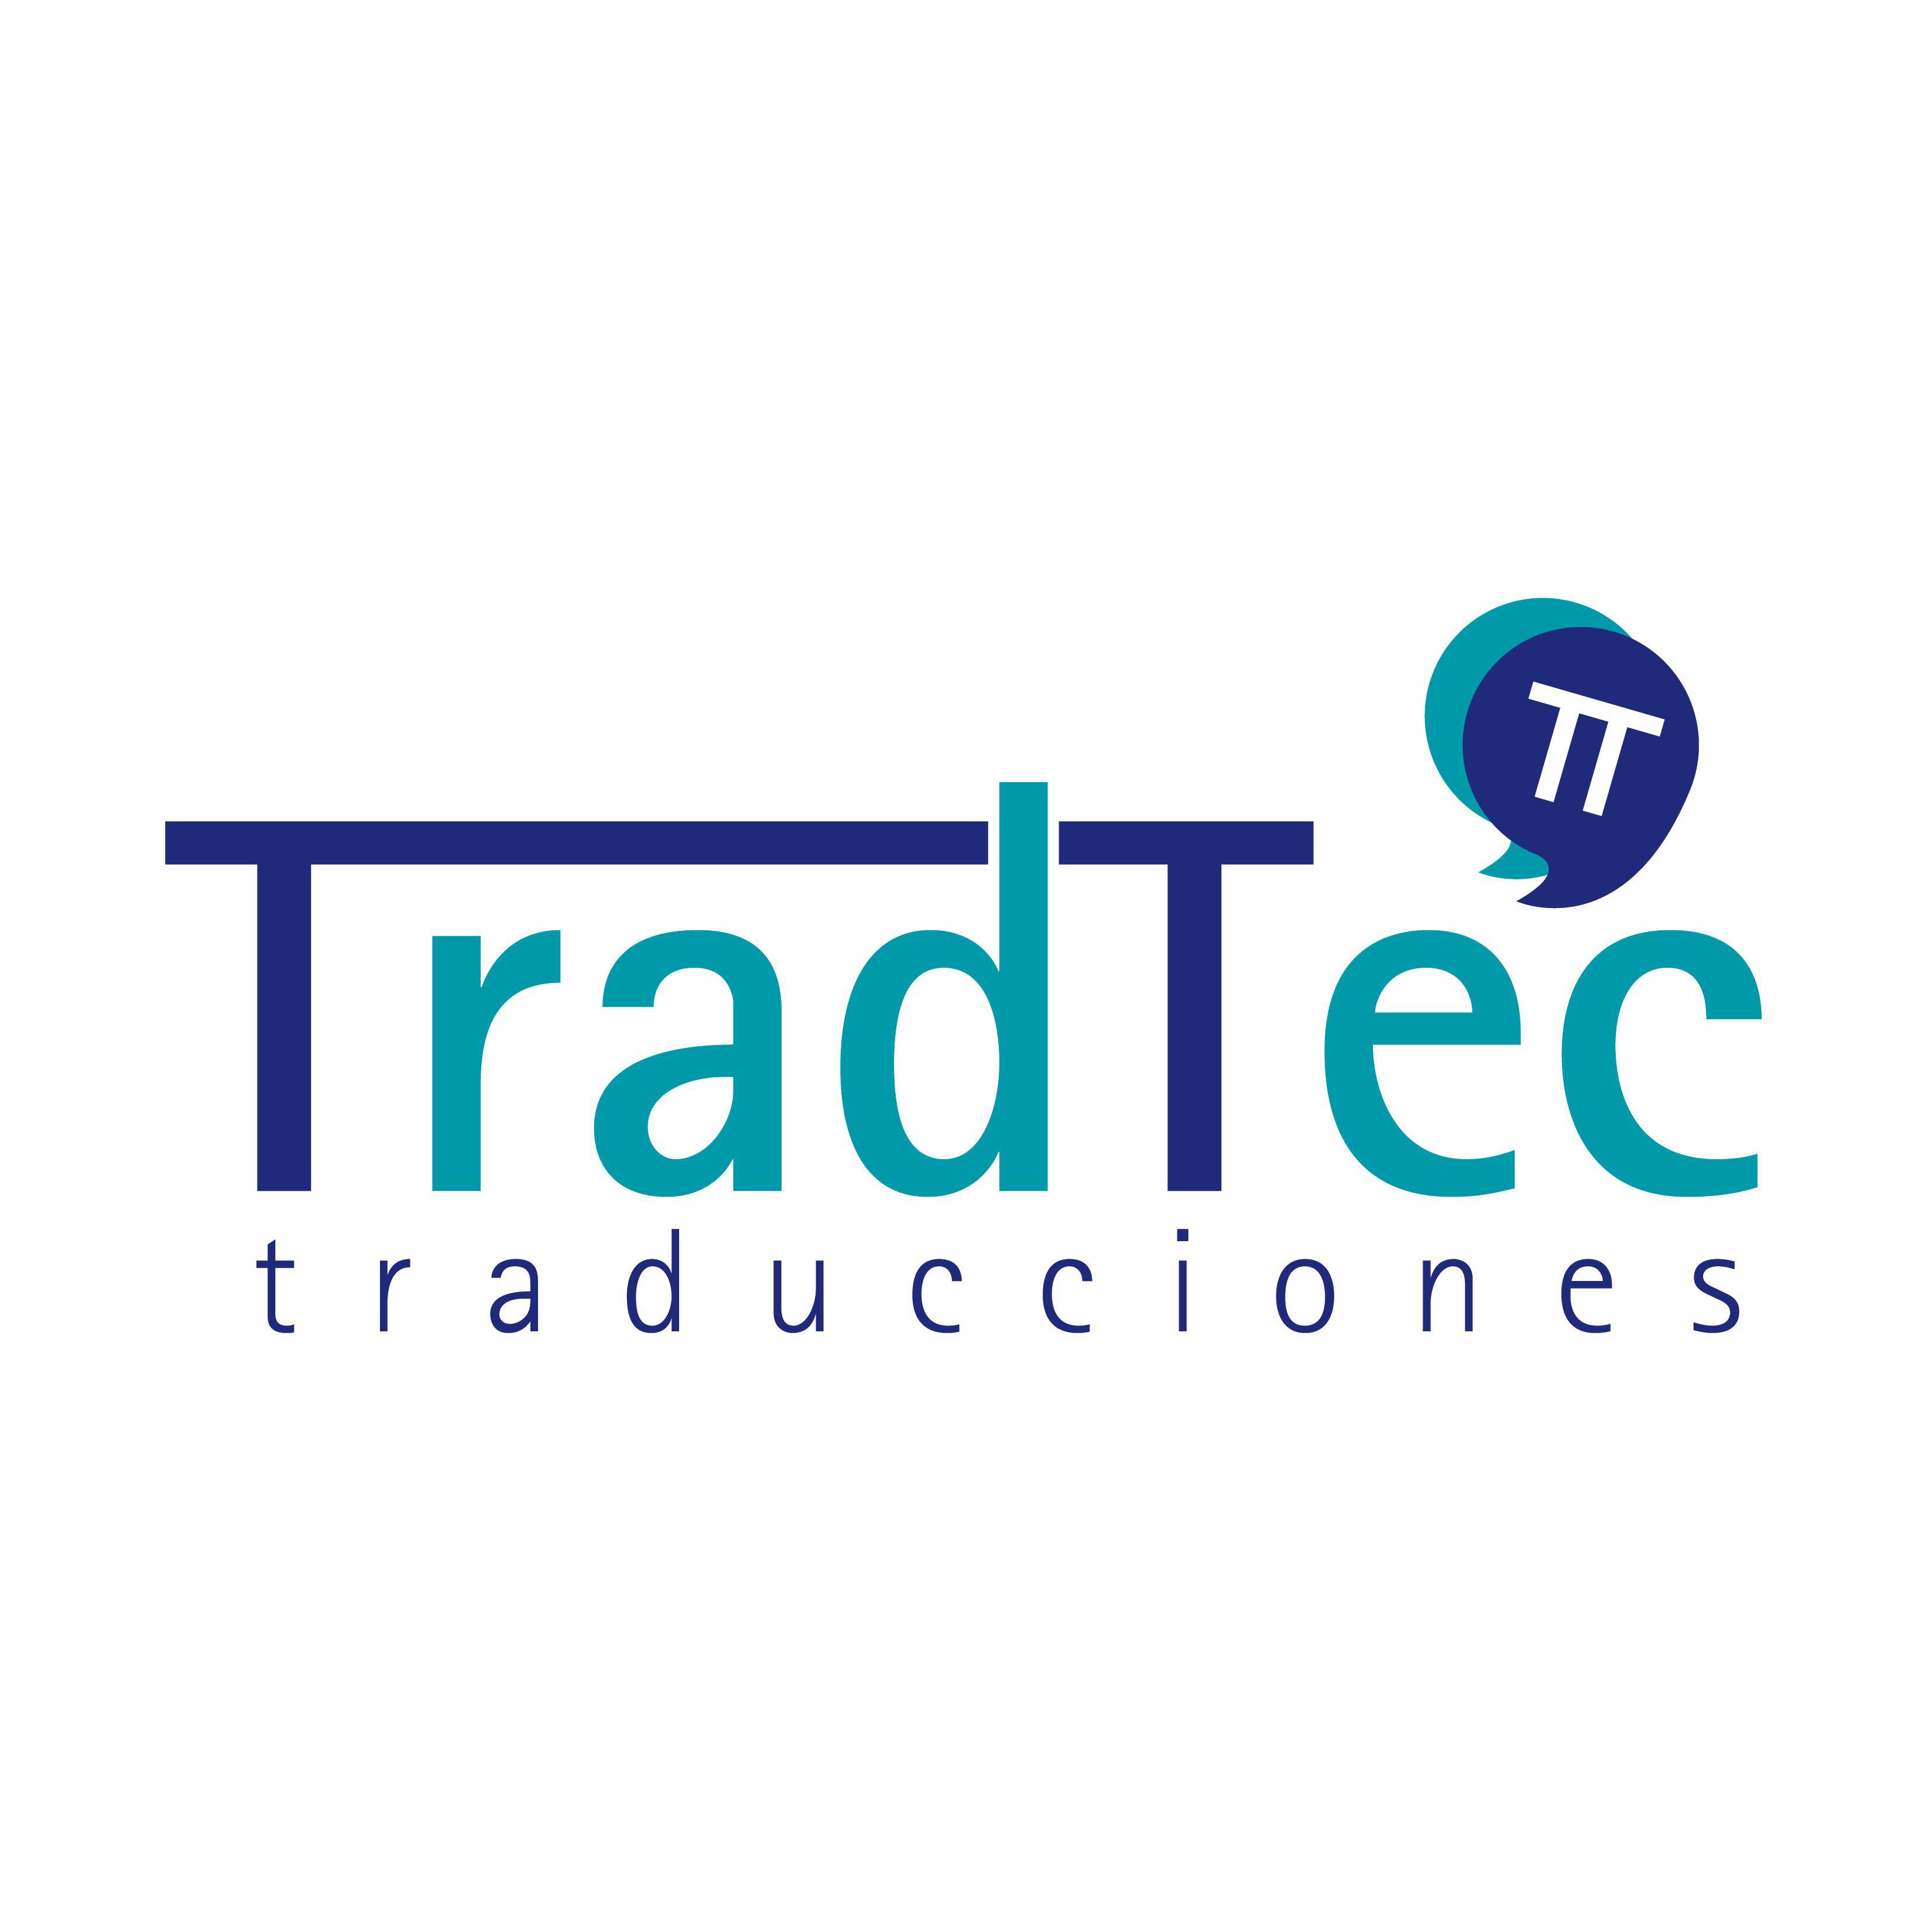 Tradtec - Traducciones Logo